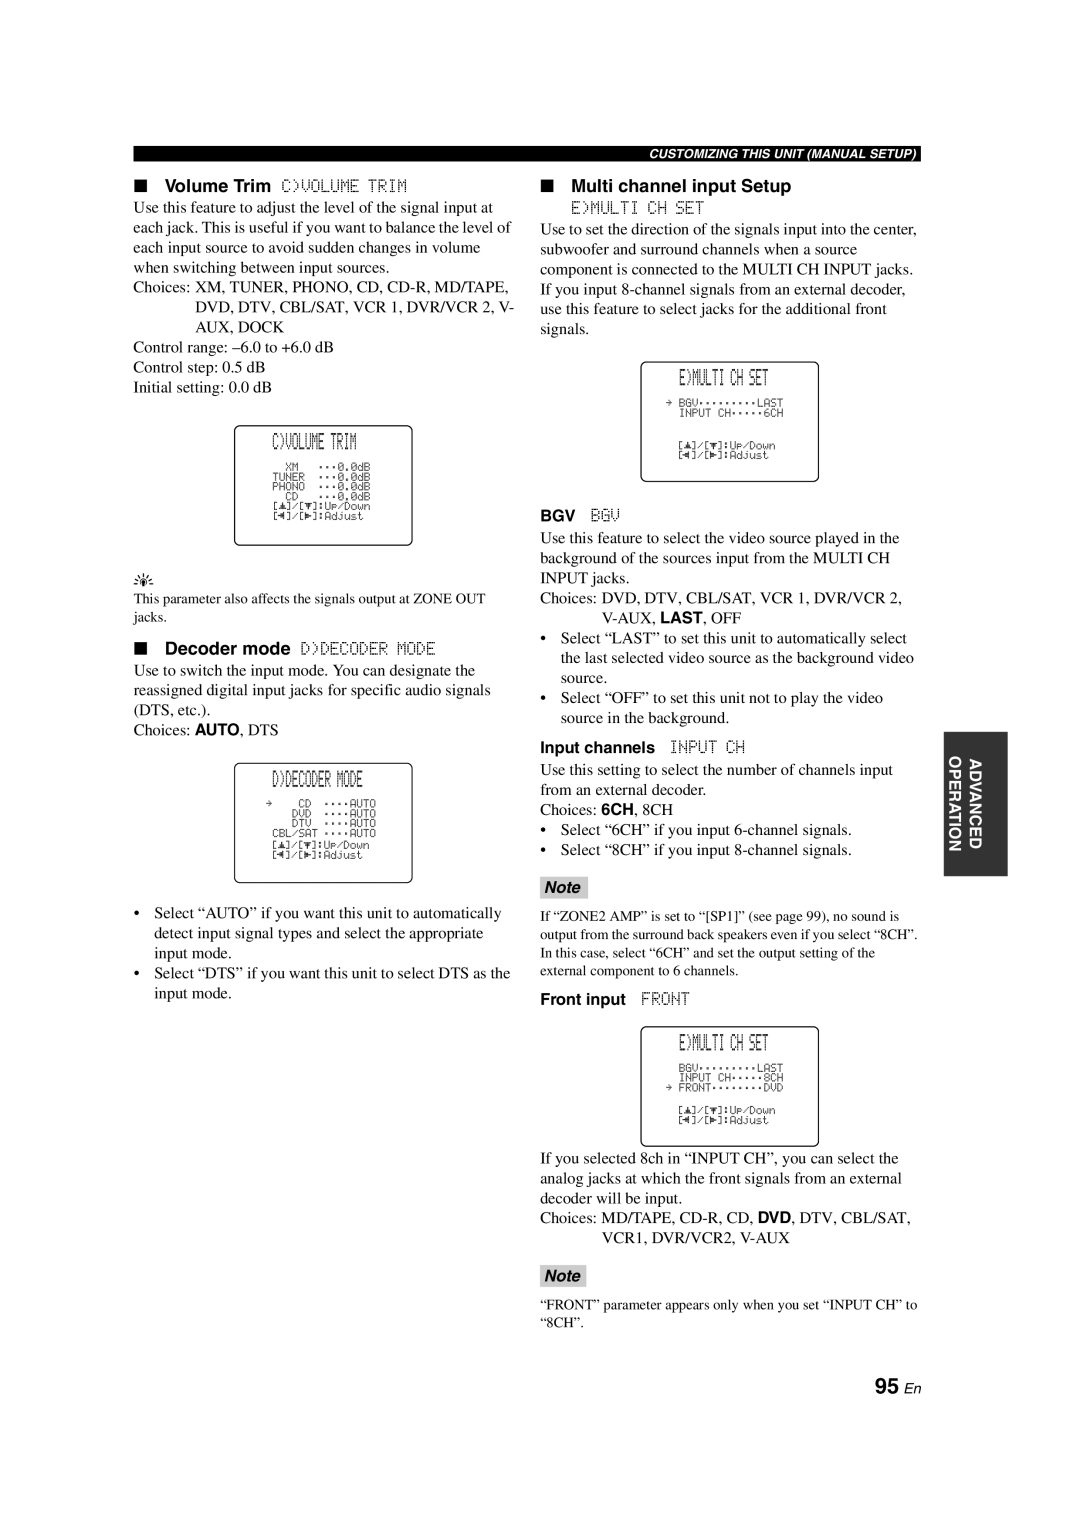 Yamaha HTR-6090 owner manual Cvolume Trim, Ddecoder Mode, Emulti Ch Set, 95 En, Multi channel input Setup 